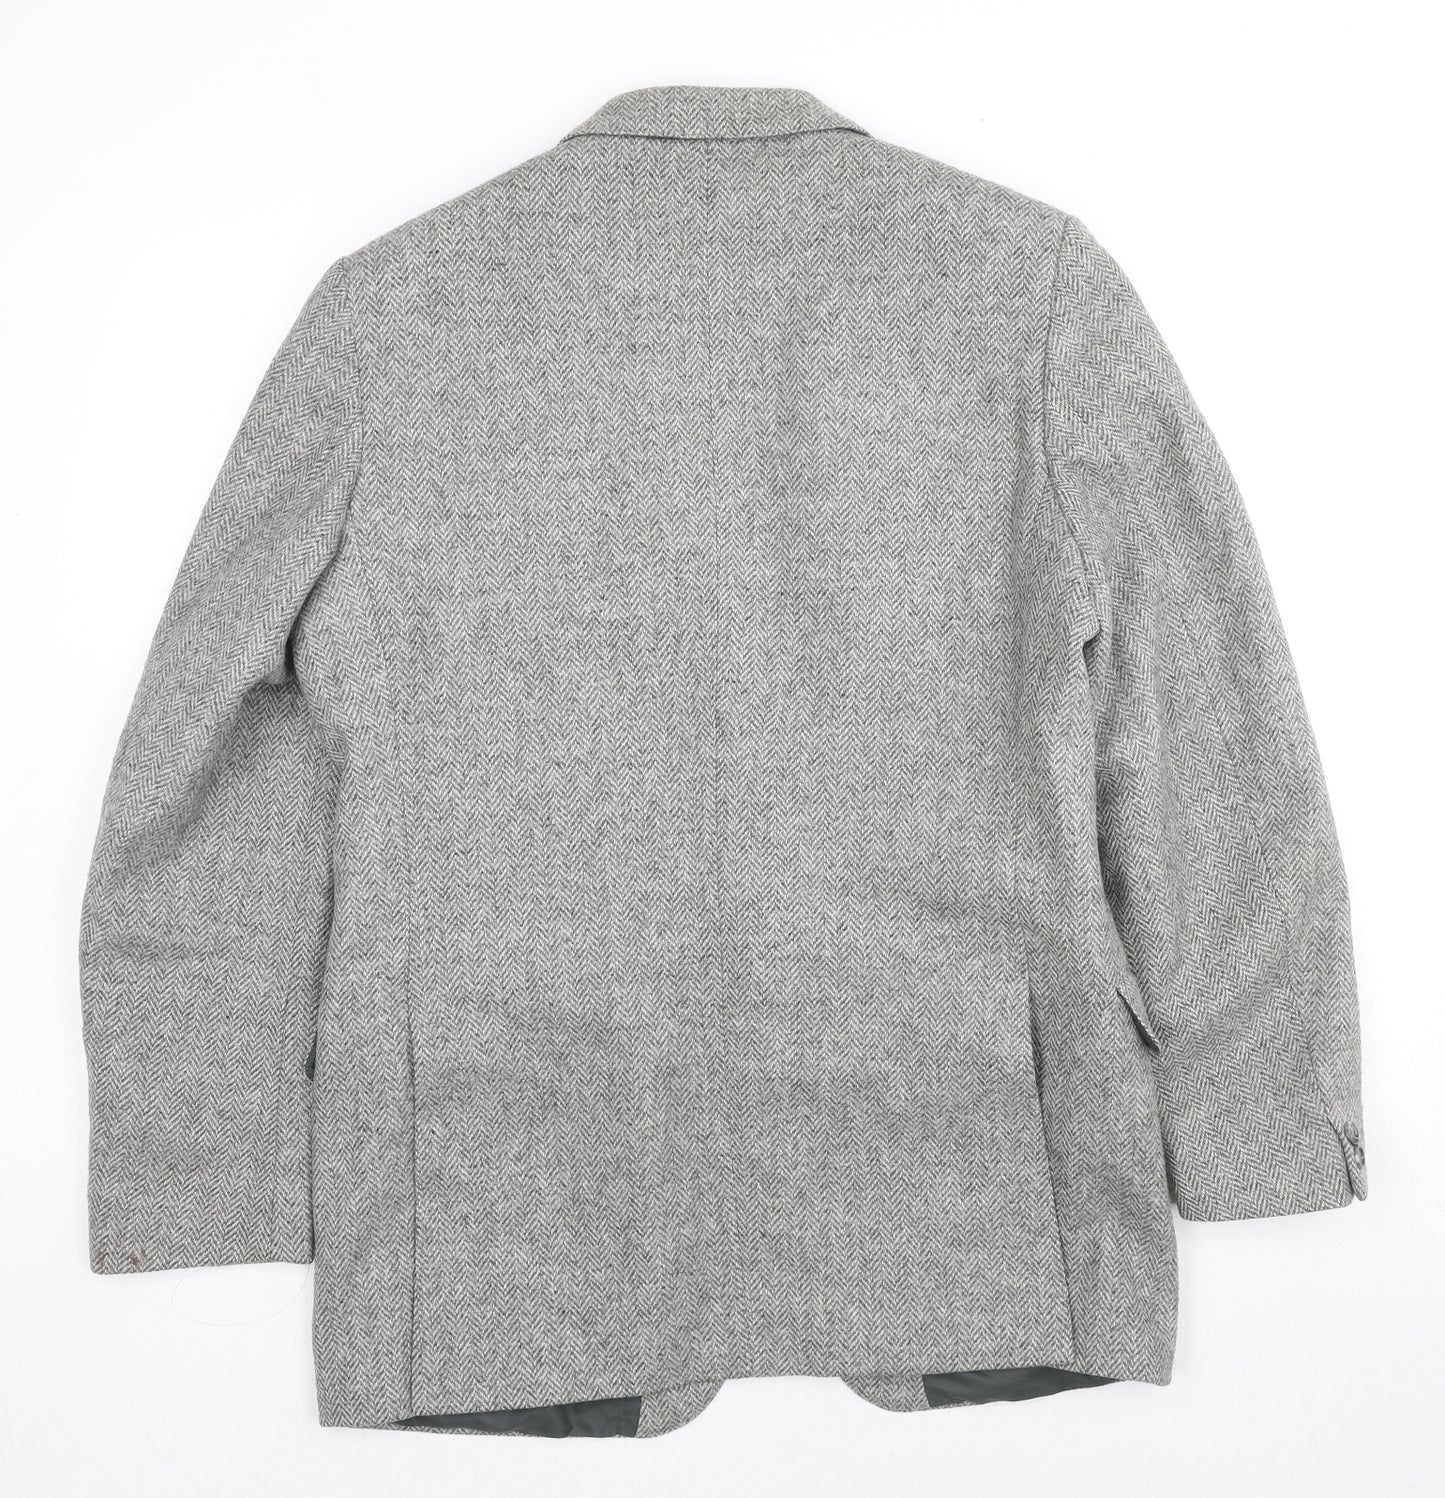 St Michael Mens Grey Herringbone Wool Jacket Suit Jacket Size 42 Regular